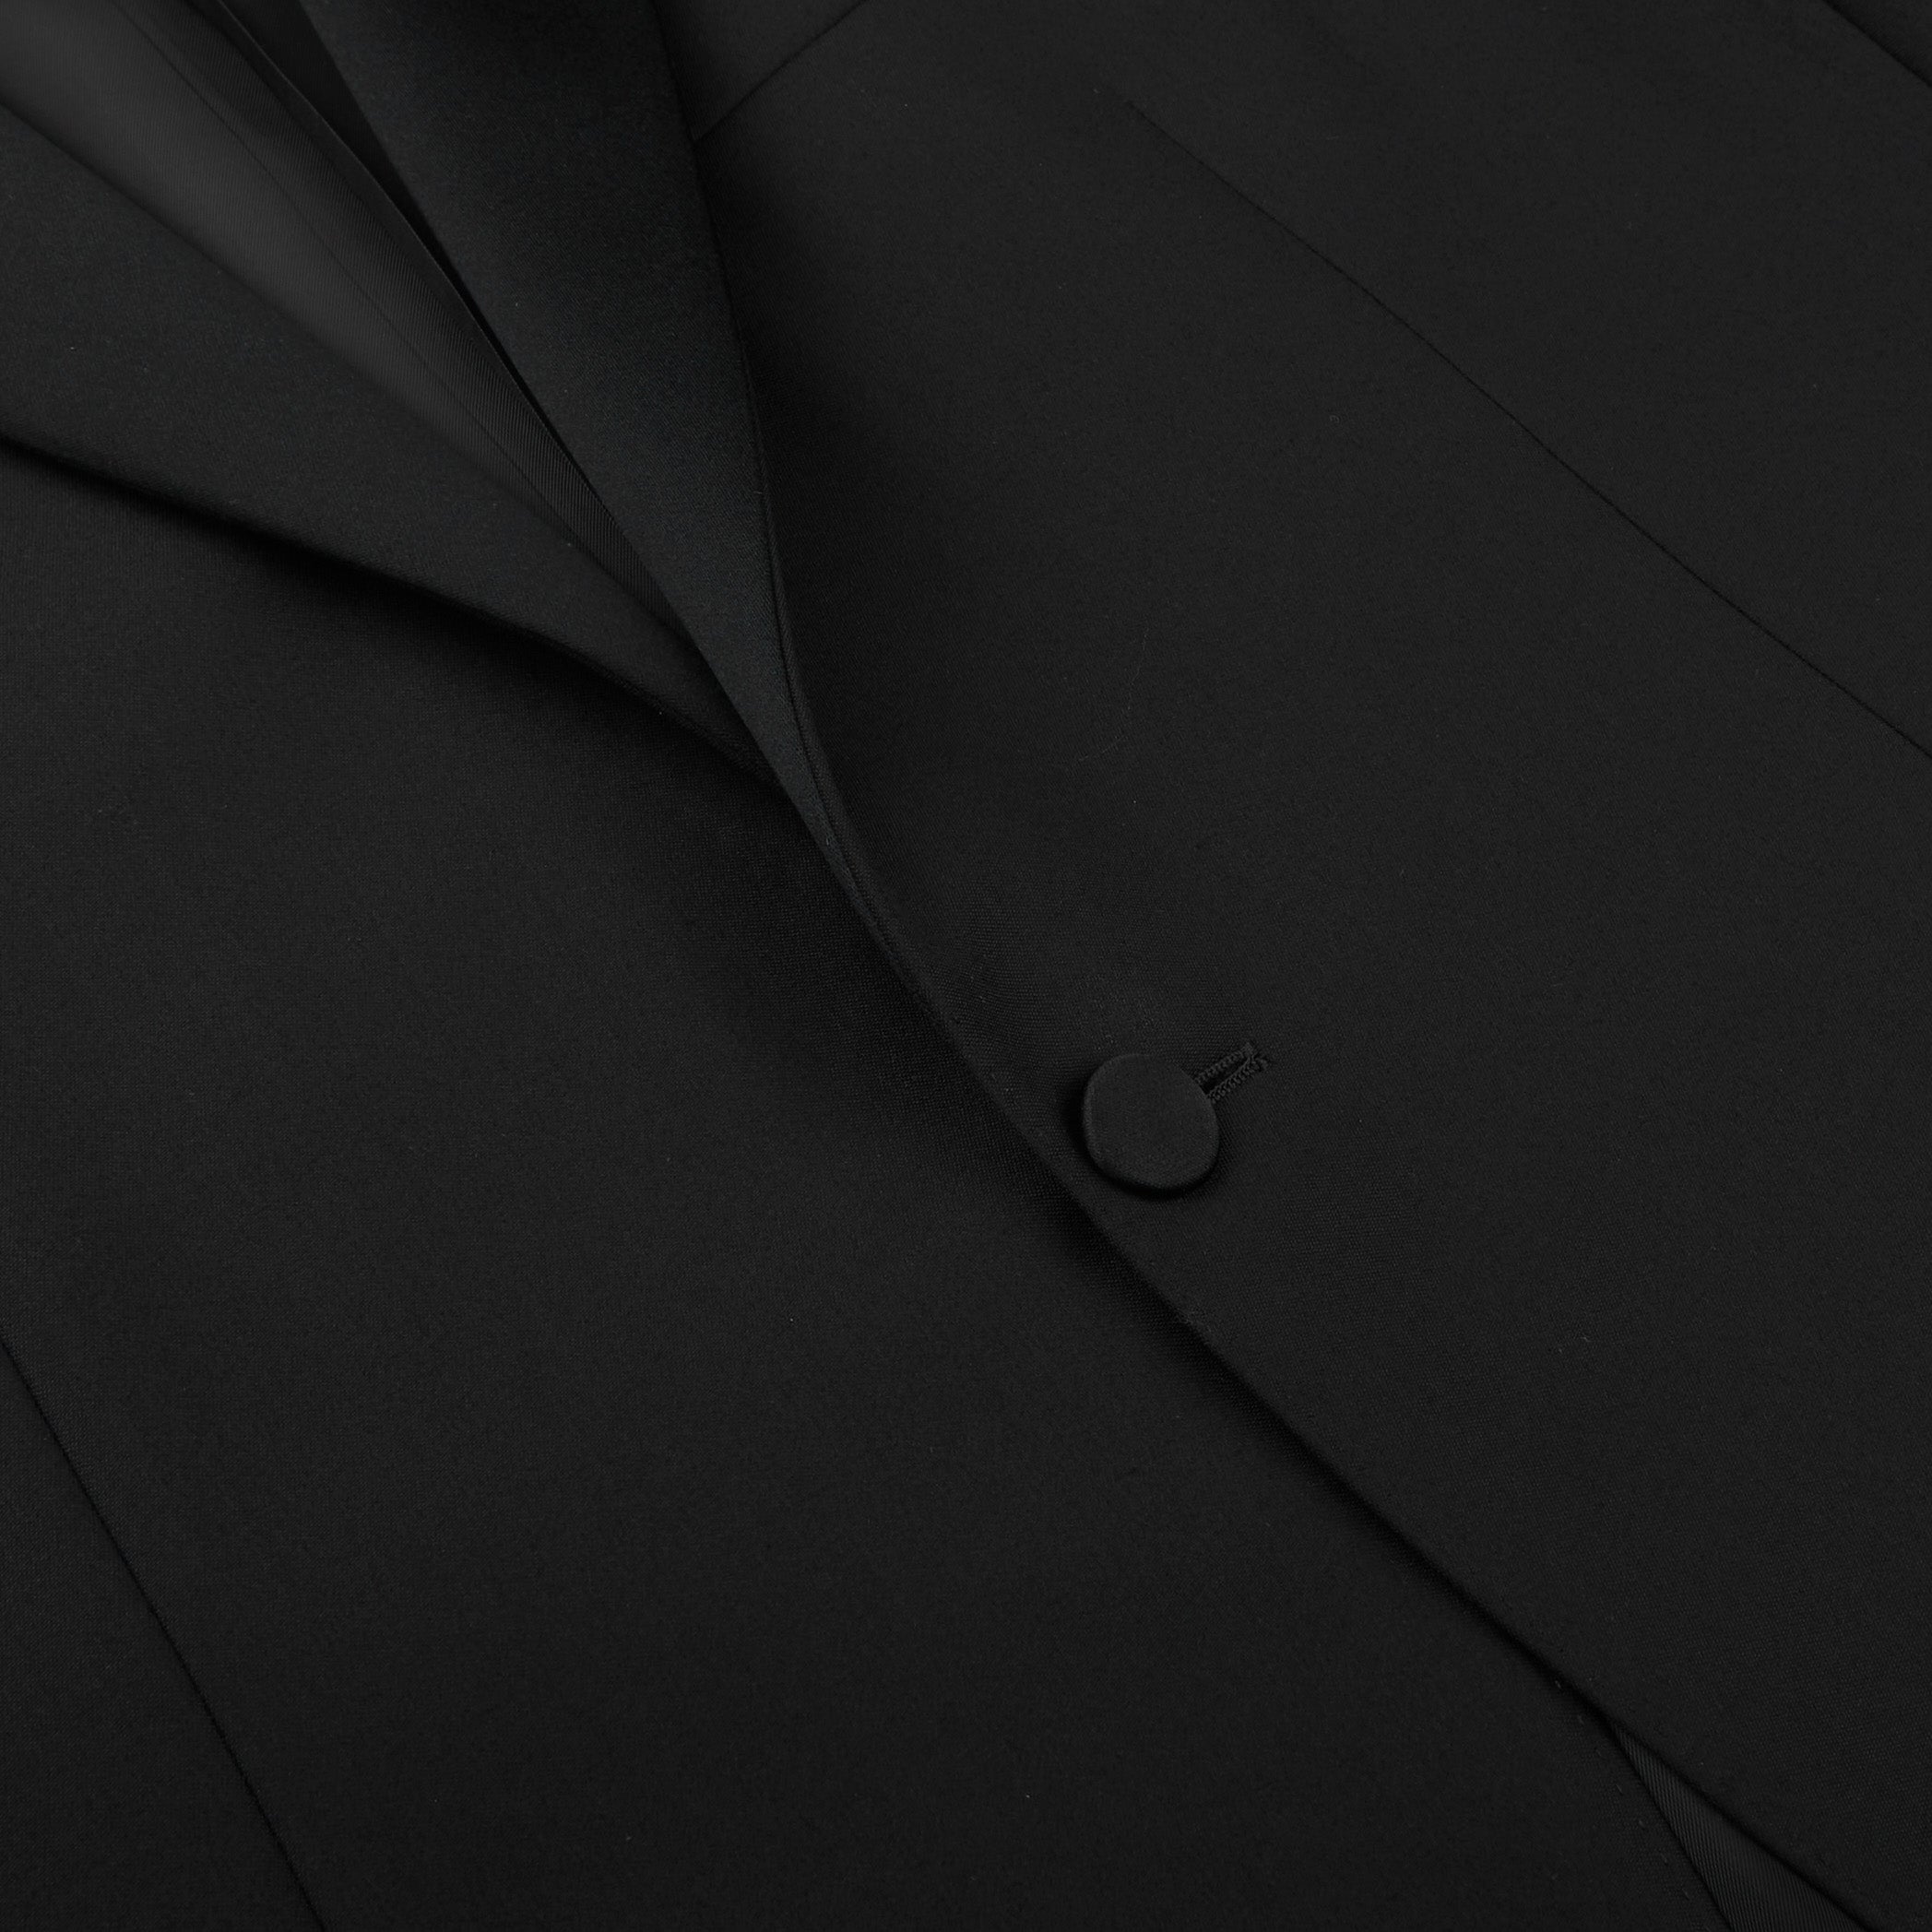 Canali Black Wool Peak Lapel Tuxedo Suit Closed